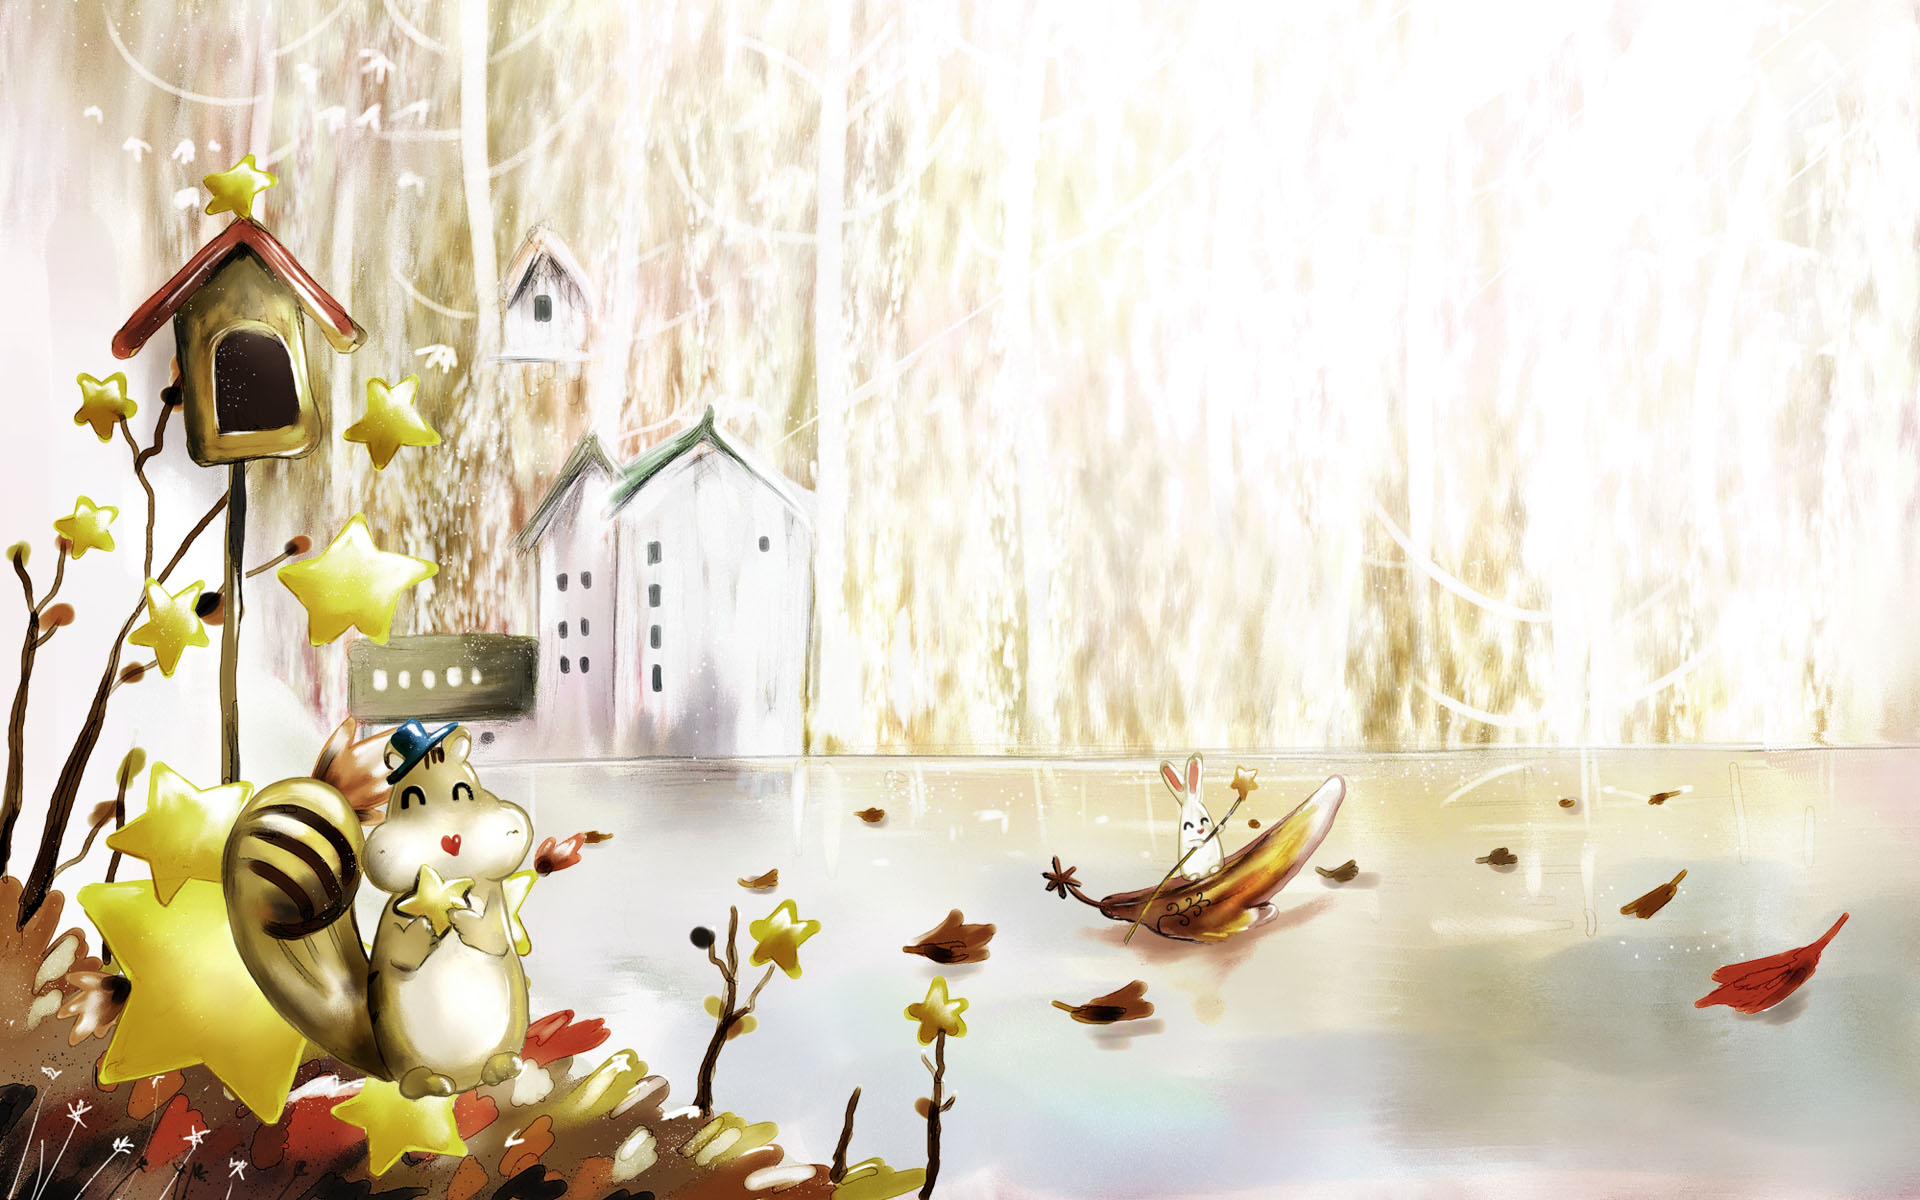 Autumn Fairy Tale Wallpapers - vector_autumn_illustration_viewillustrator_1020.jpg